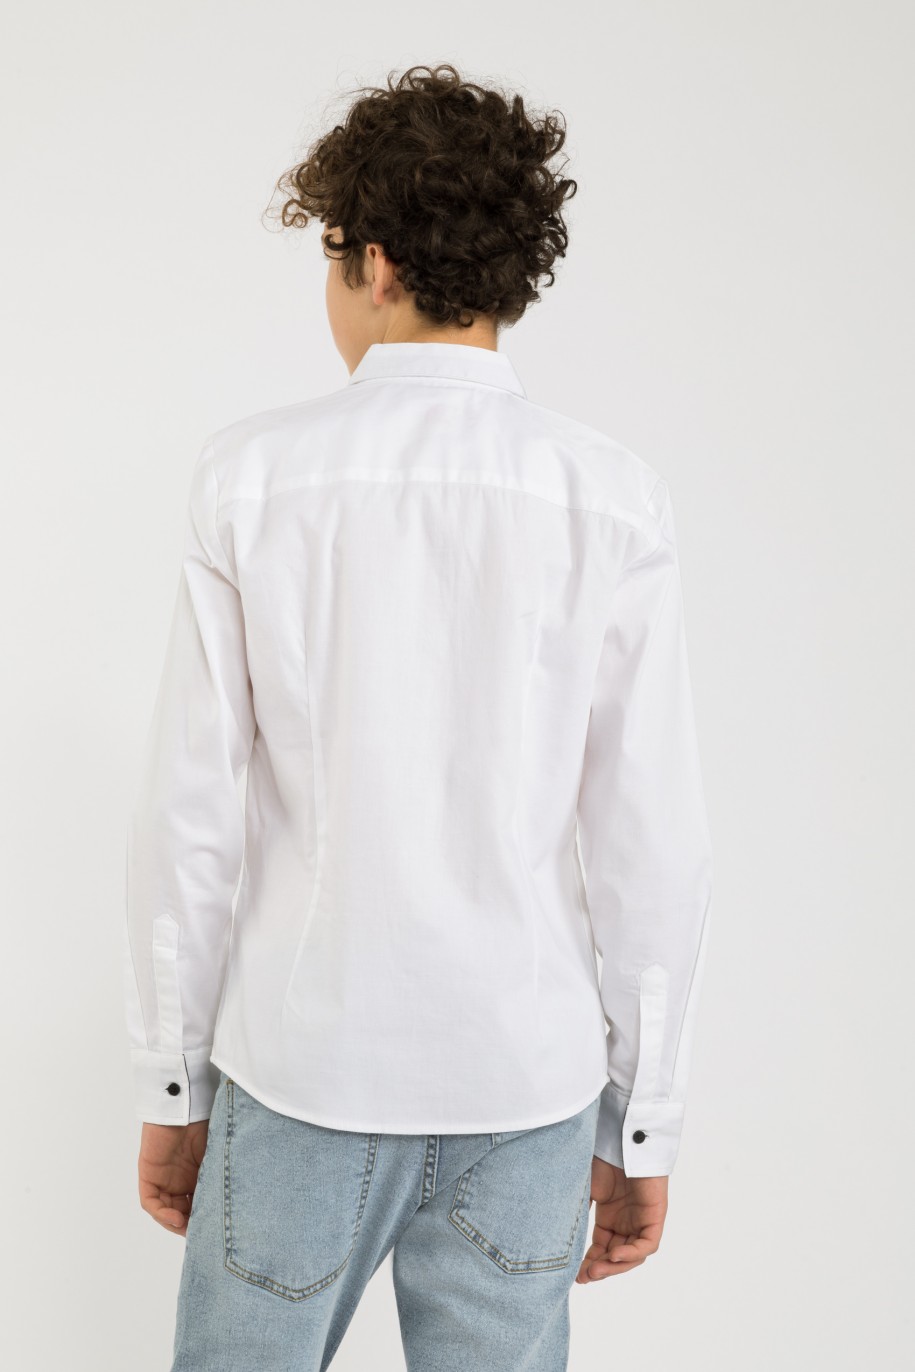 Biała elegancka koszula dla chłopaka - 32679